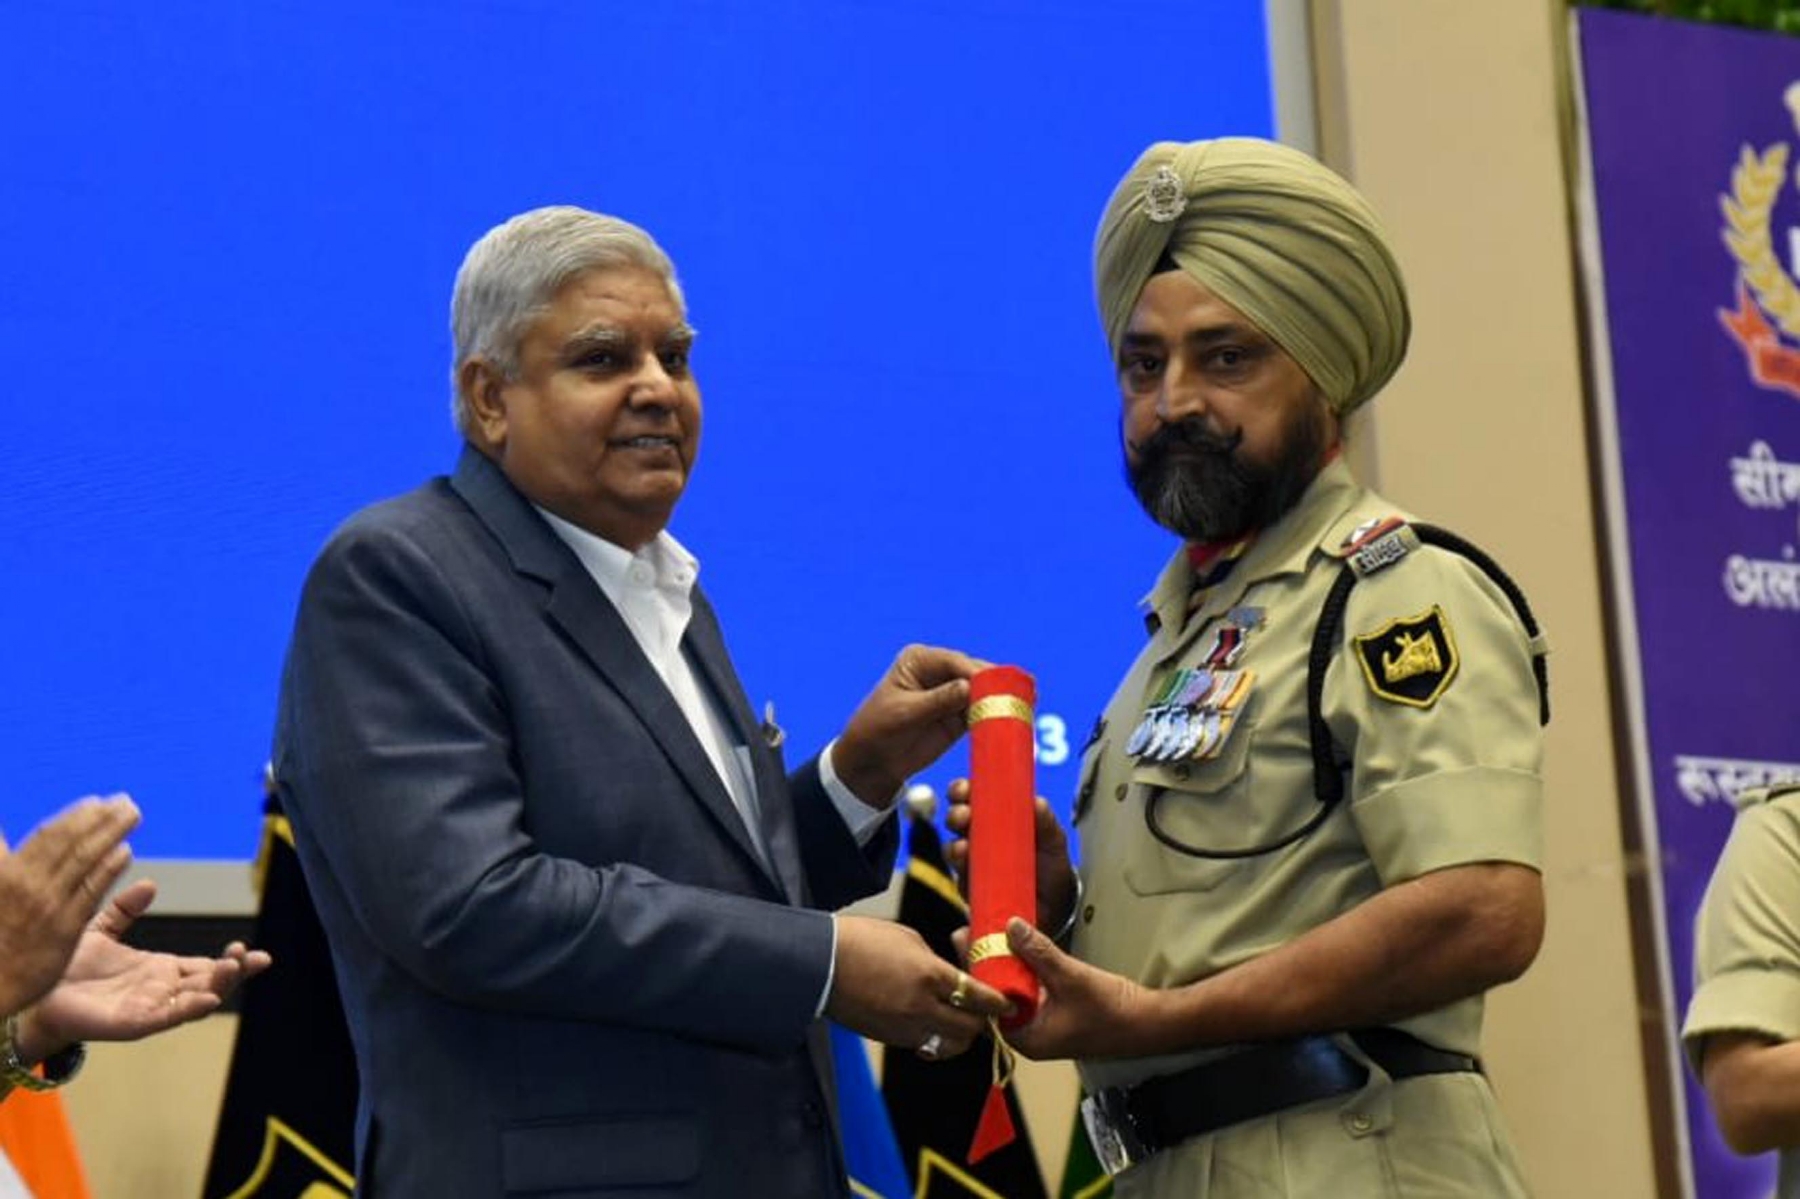 नई दिल्ली में बुधवार 24 मई 2023 को उपराष्ट्रपति जगदीप धनखड़ ने बीएसएफ अलंकरण समारोह में सीमा सुरक्षा बल के जवानों को सराहनीय सेवा के लिए पुलिस पदक प्रदान करते हुए। हिन्दुस्थान समाचार/ फोटो गणेश बिष्ट